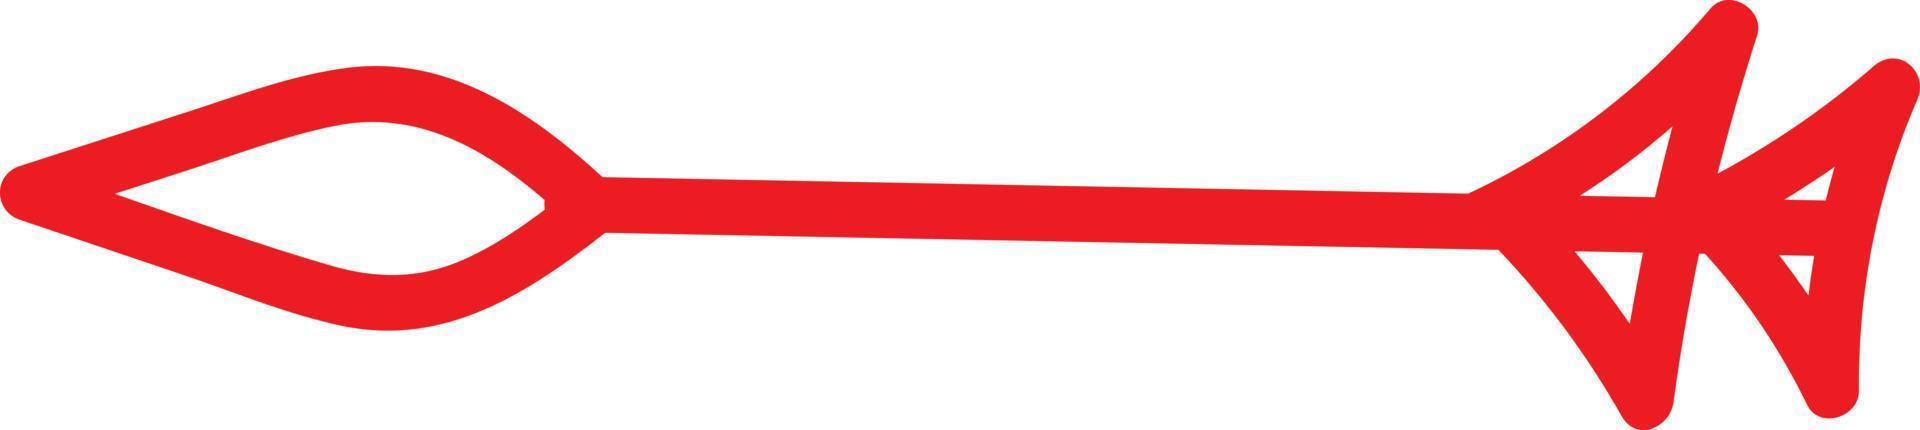 flèche rouge avec une lance comme pointeur, illustration, vecteur sur fond blanc.